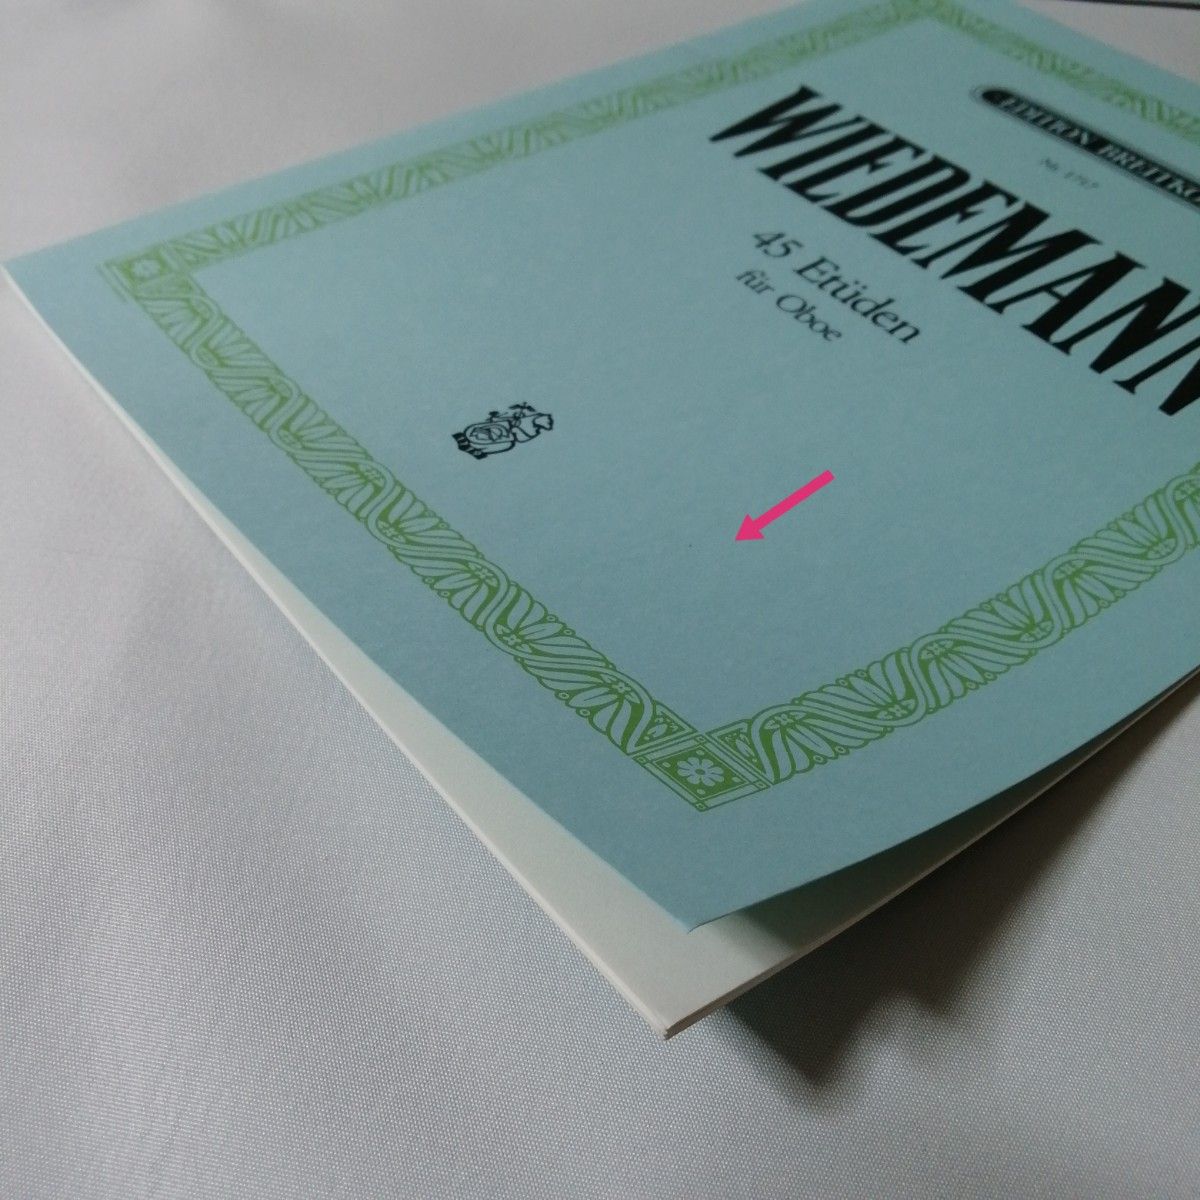 ヴィーデマン　オーボエのための45の練習曲 (オーボエ教則本) ブライトコプフ出版